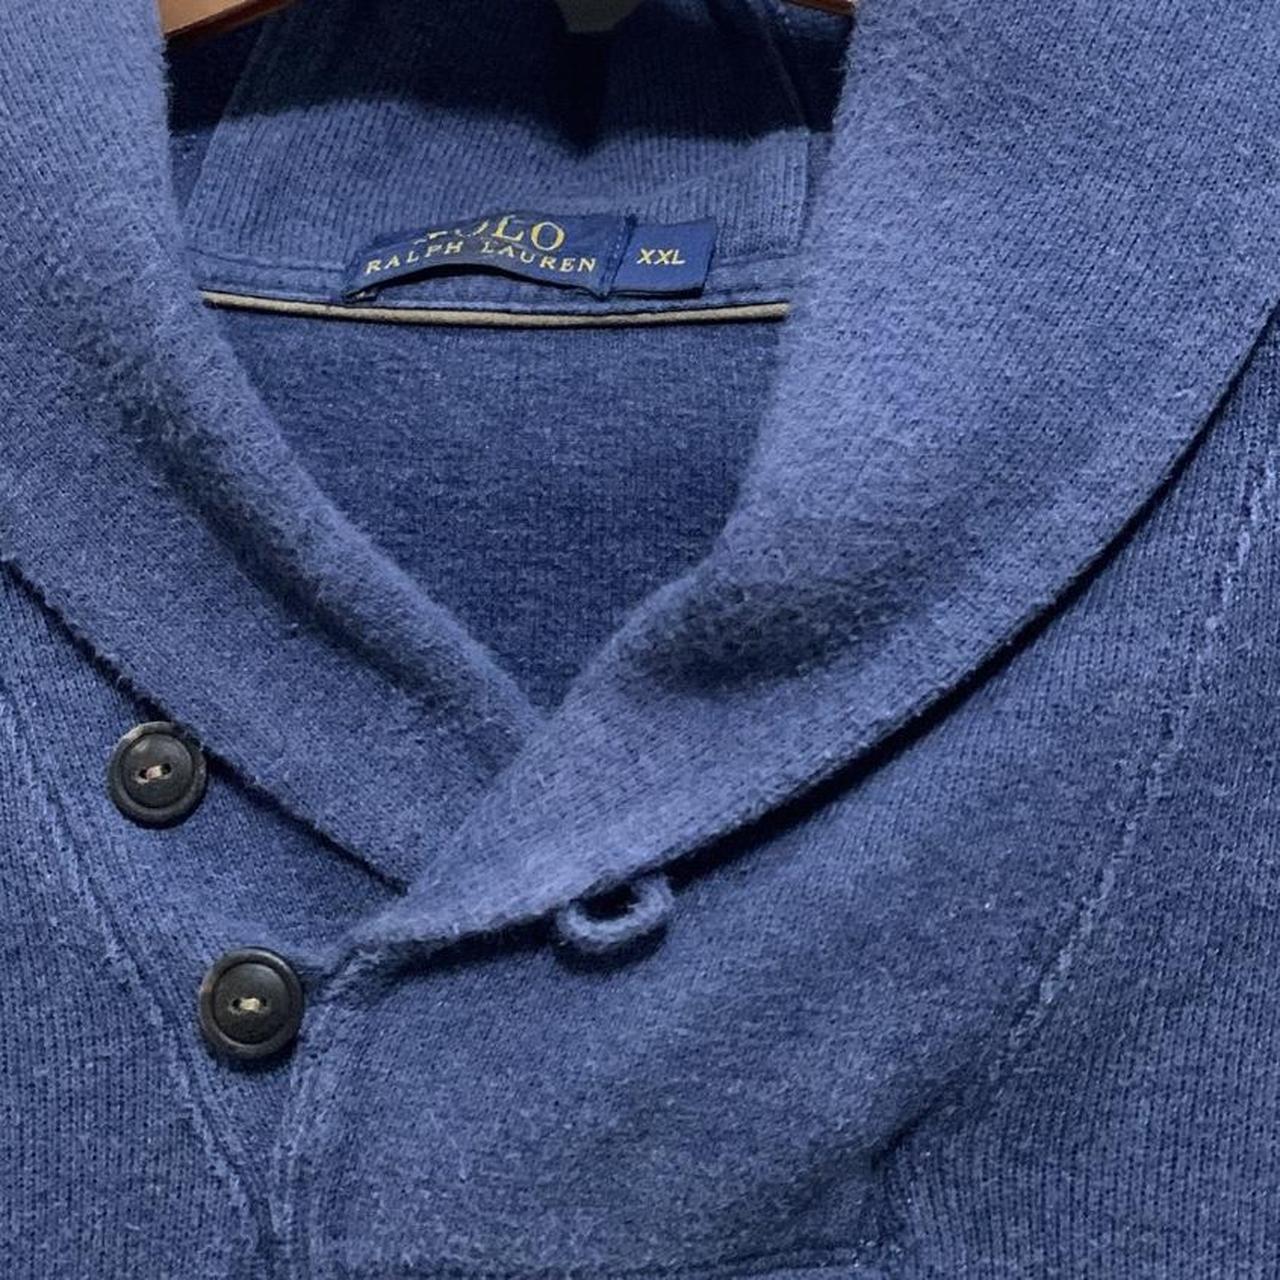 Vintage Polo Ralph Lauren Sweatshirt Good... - Depop